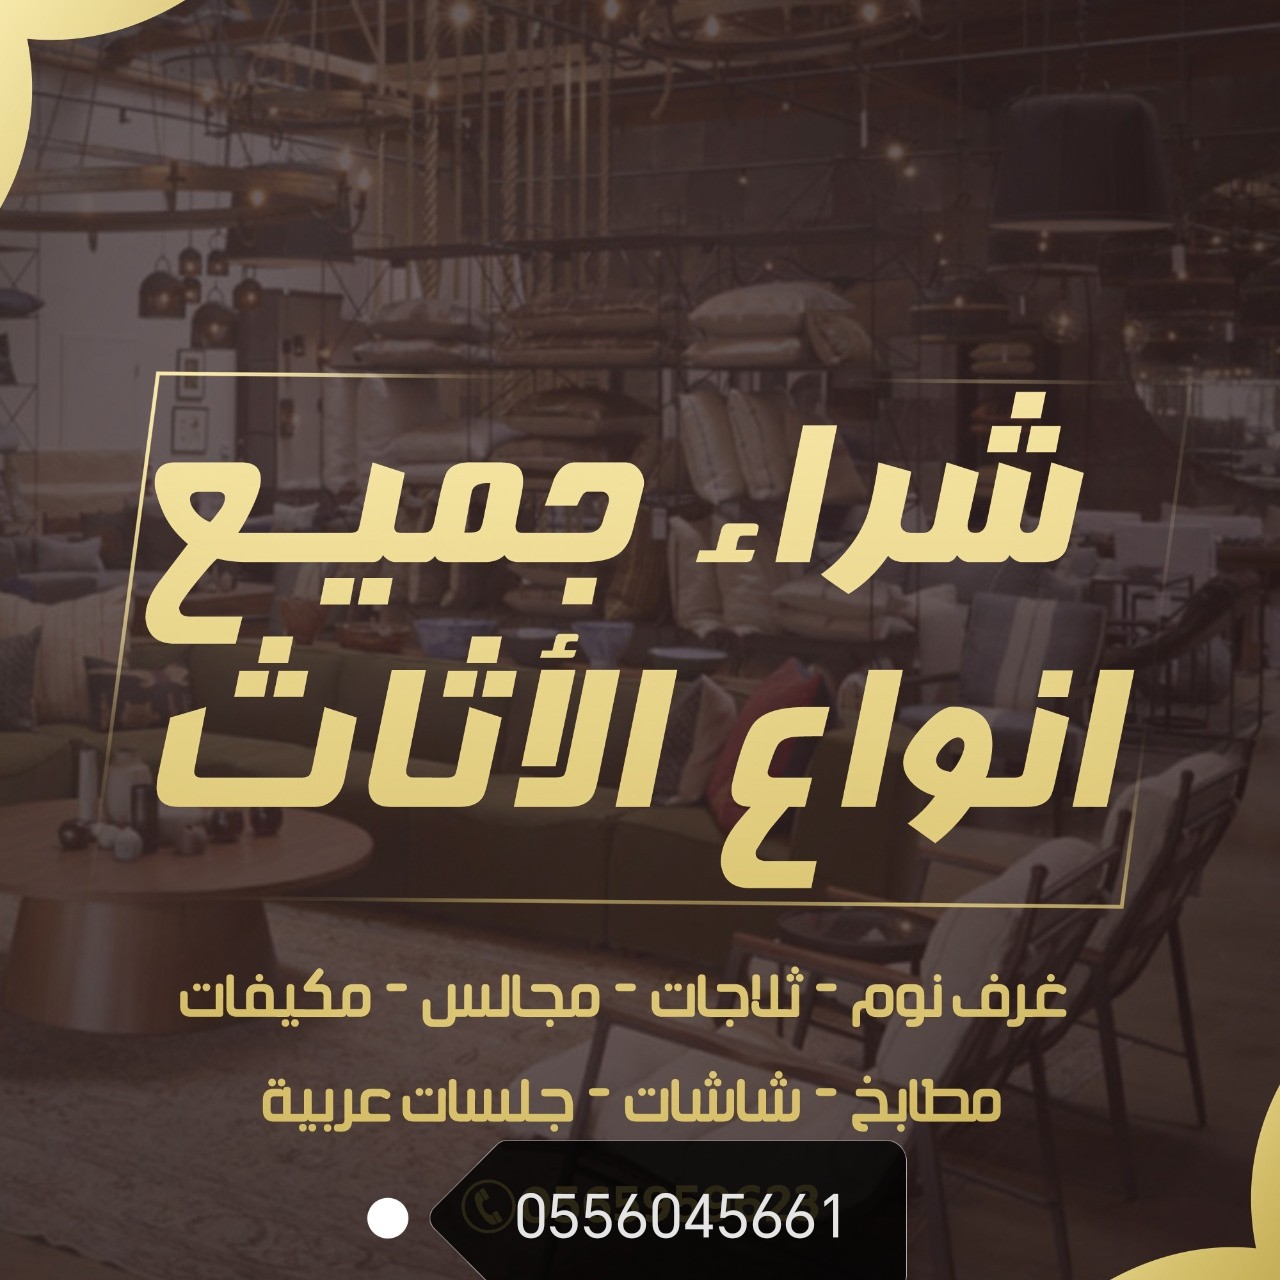 شراء اثاث مستعمل حي الريان في الرياض 0556045661